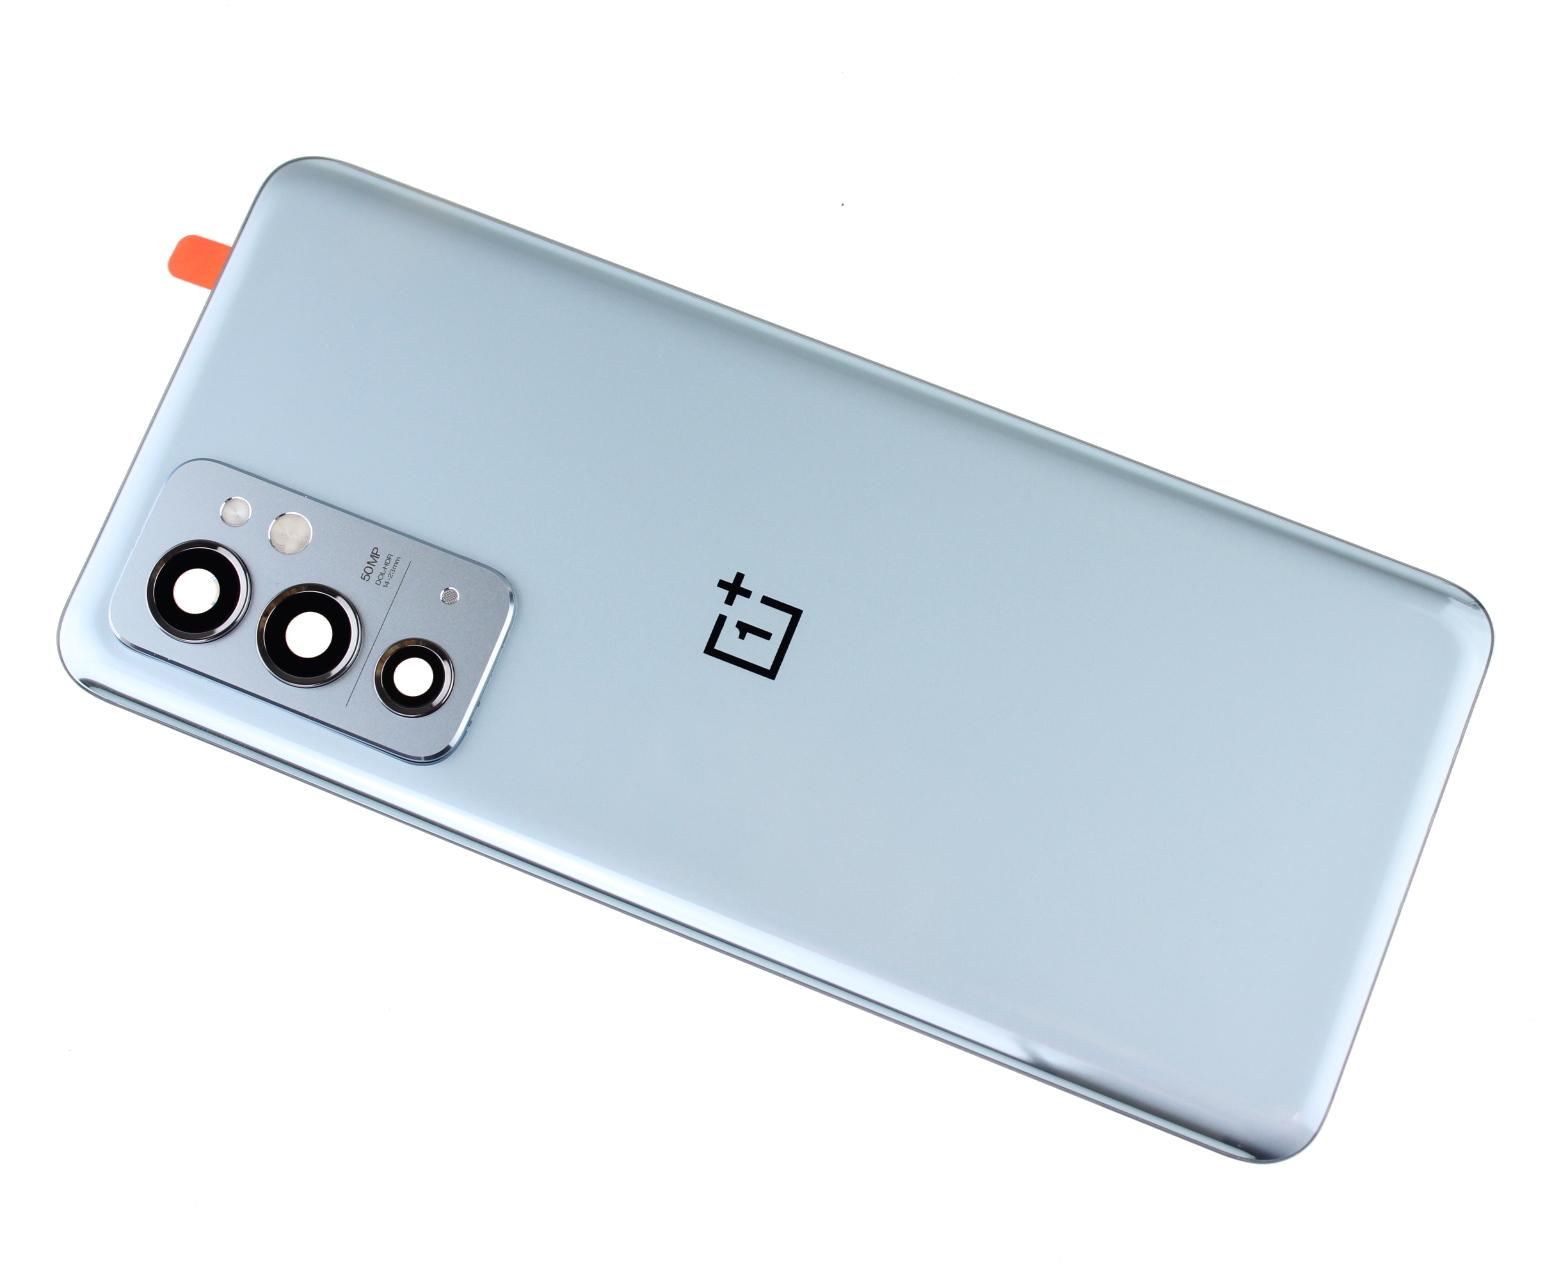 Originál kryt baterie OnePlus 9RT stříbrný